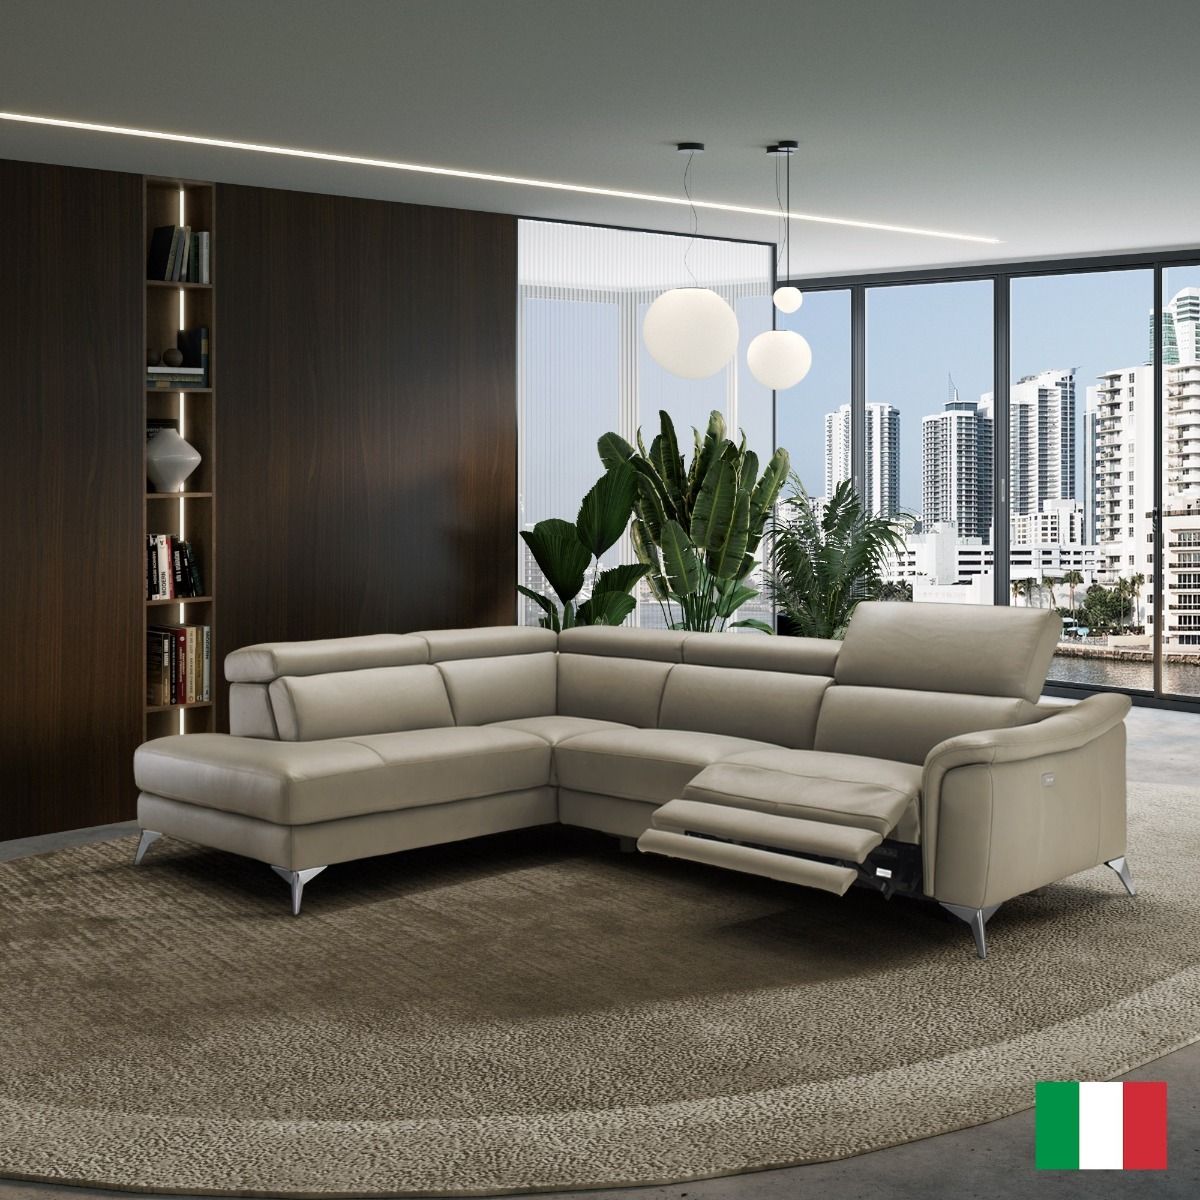 Coronelli Collezioni Monte Carlo - Italian Modern Taupe Leather LAF Sectional Sofa